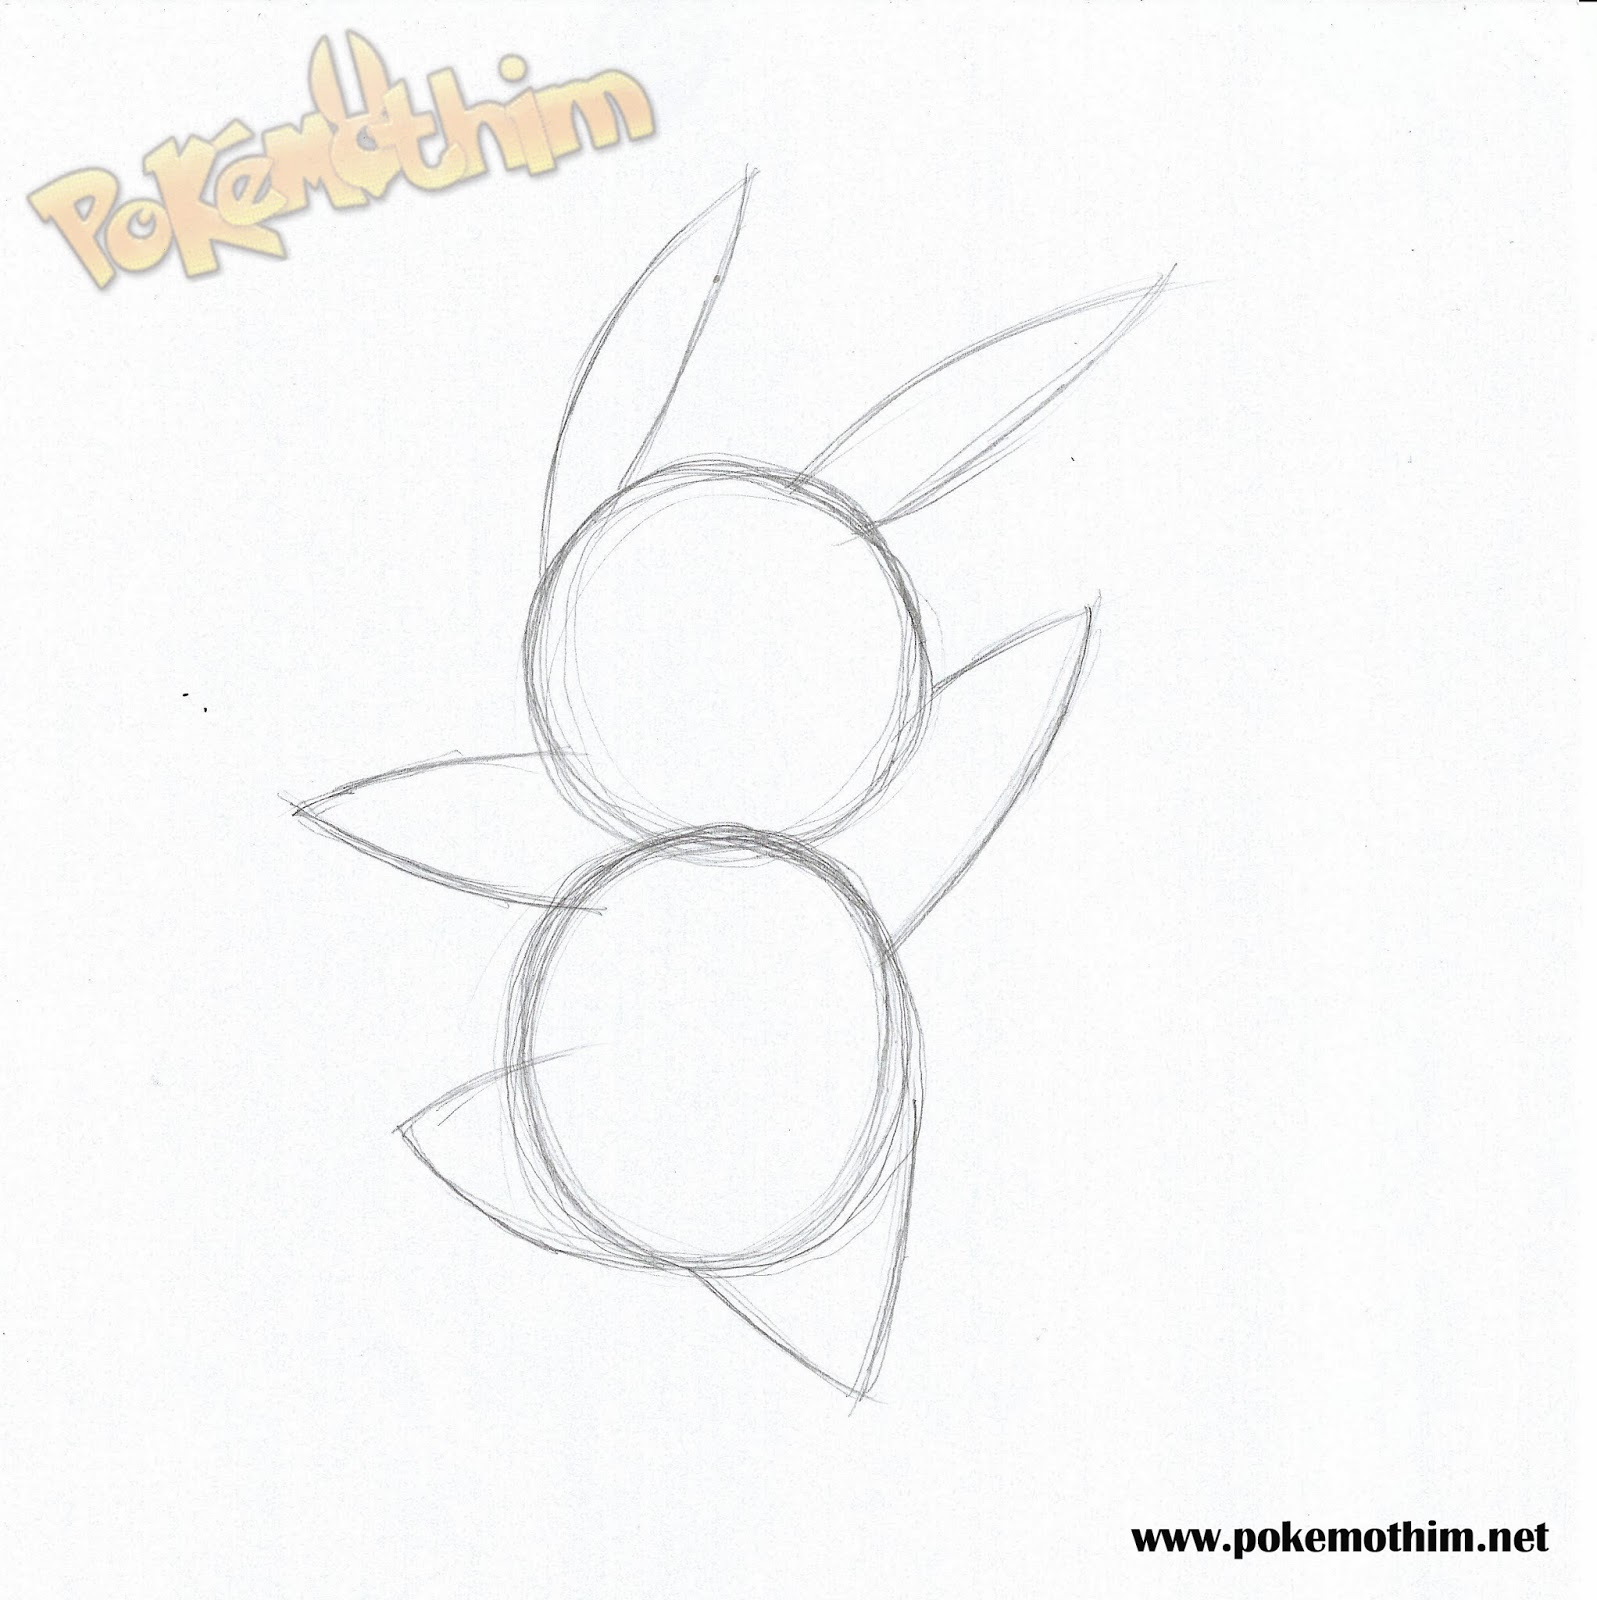 how to draw pikachu, pokemon step 7  Desenho pikachu, Pikachu pikachu,  Pokémon desenho